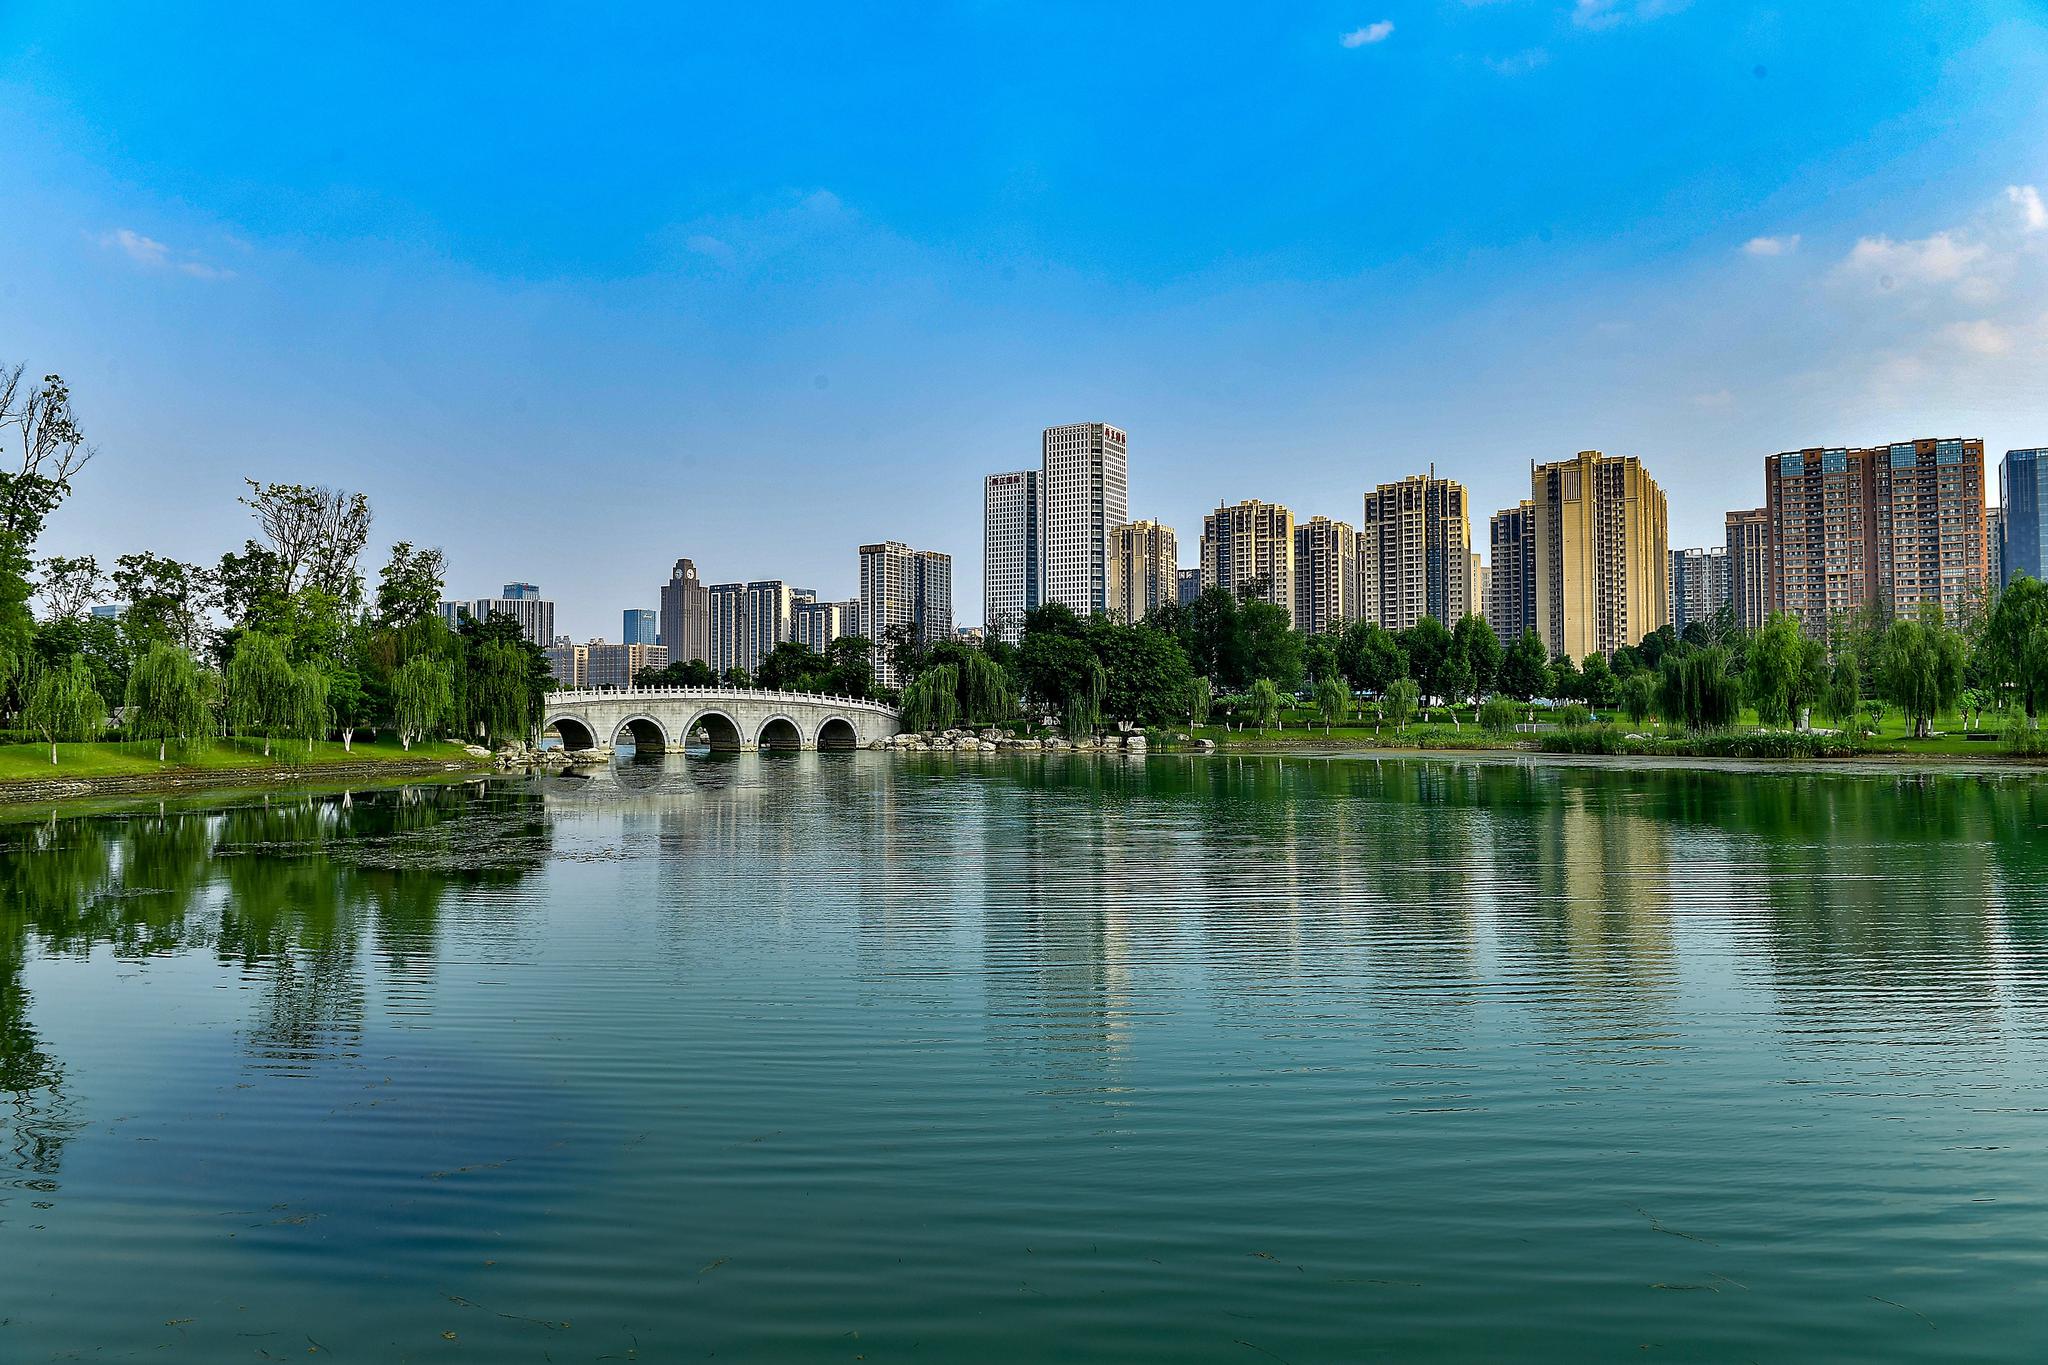 今日锦官城，花重更惬意――成都公园城市变革新图景